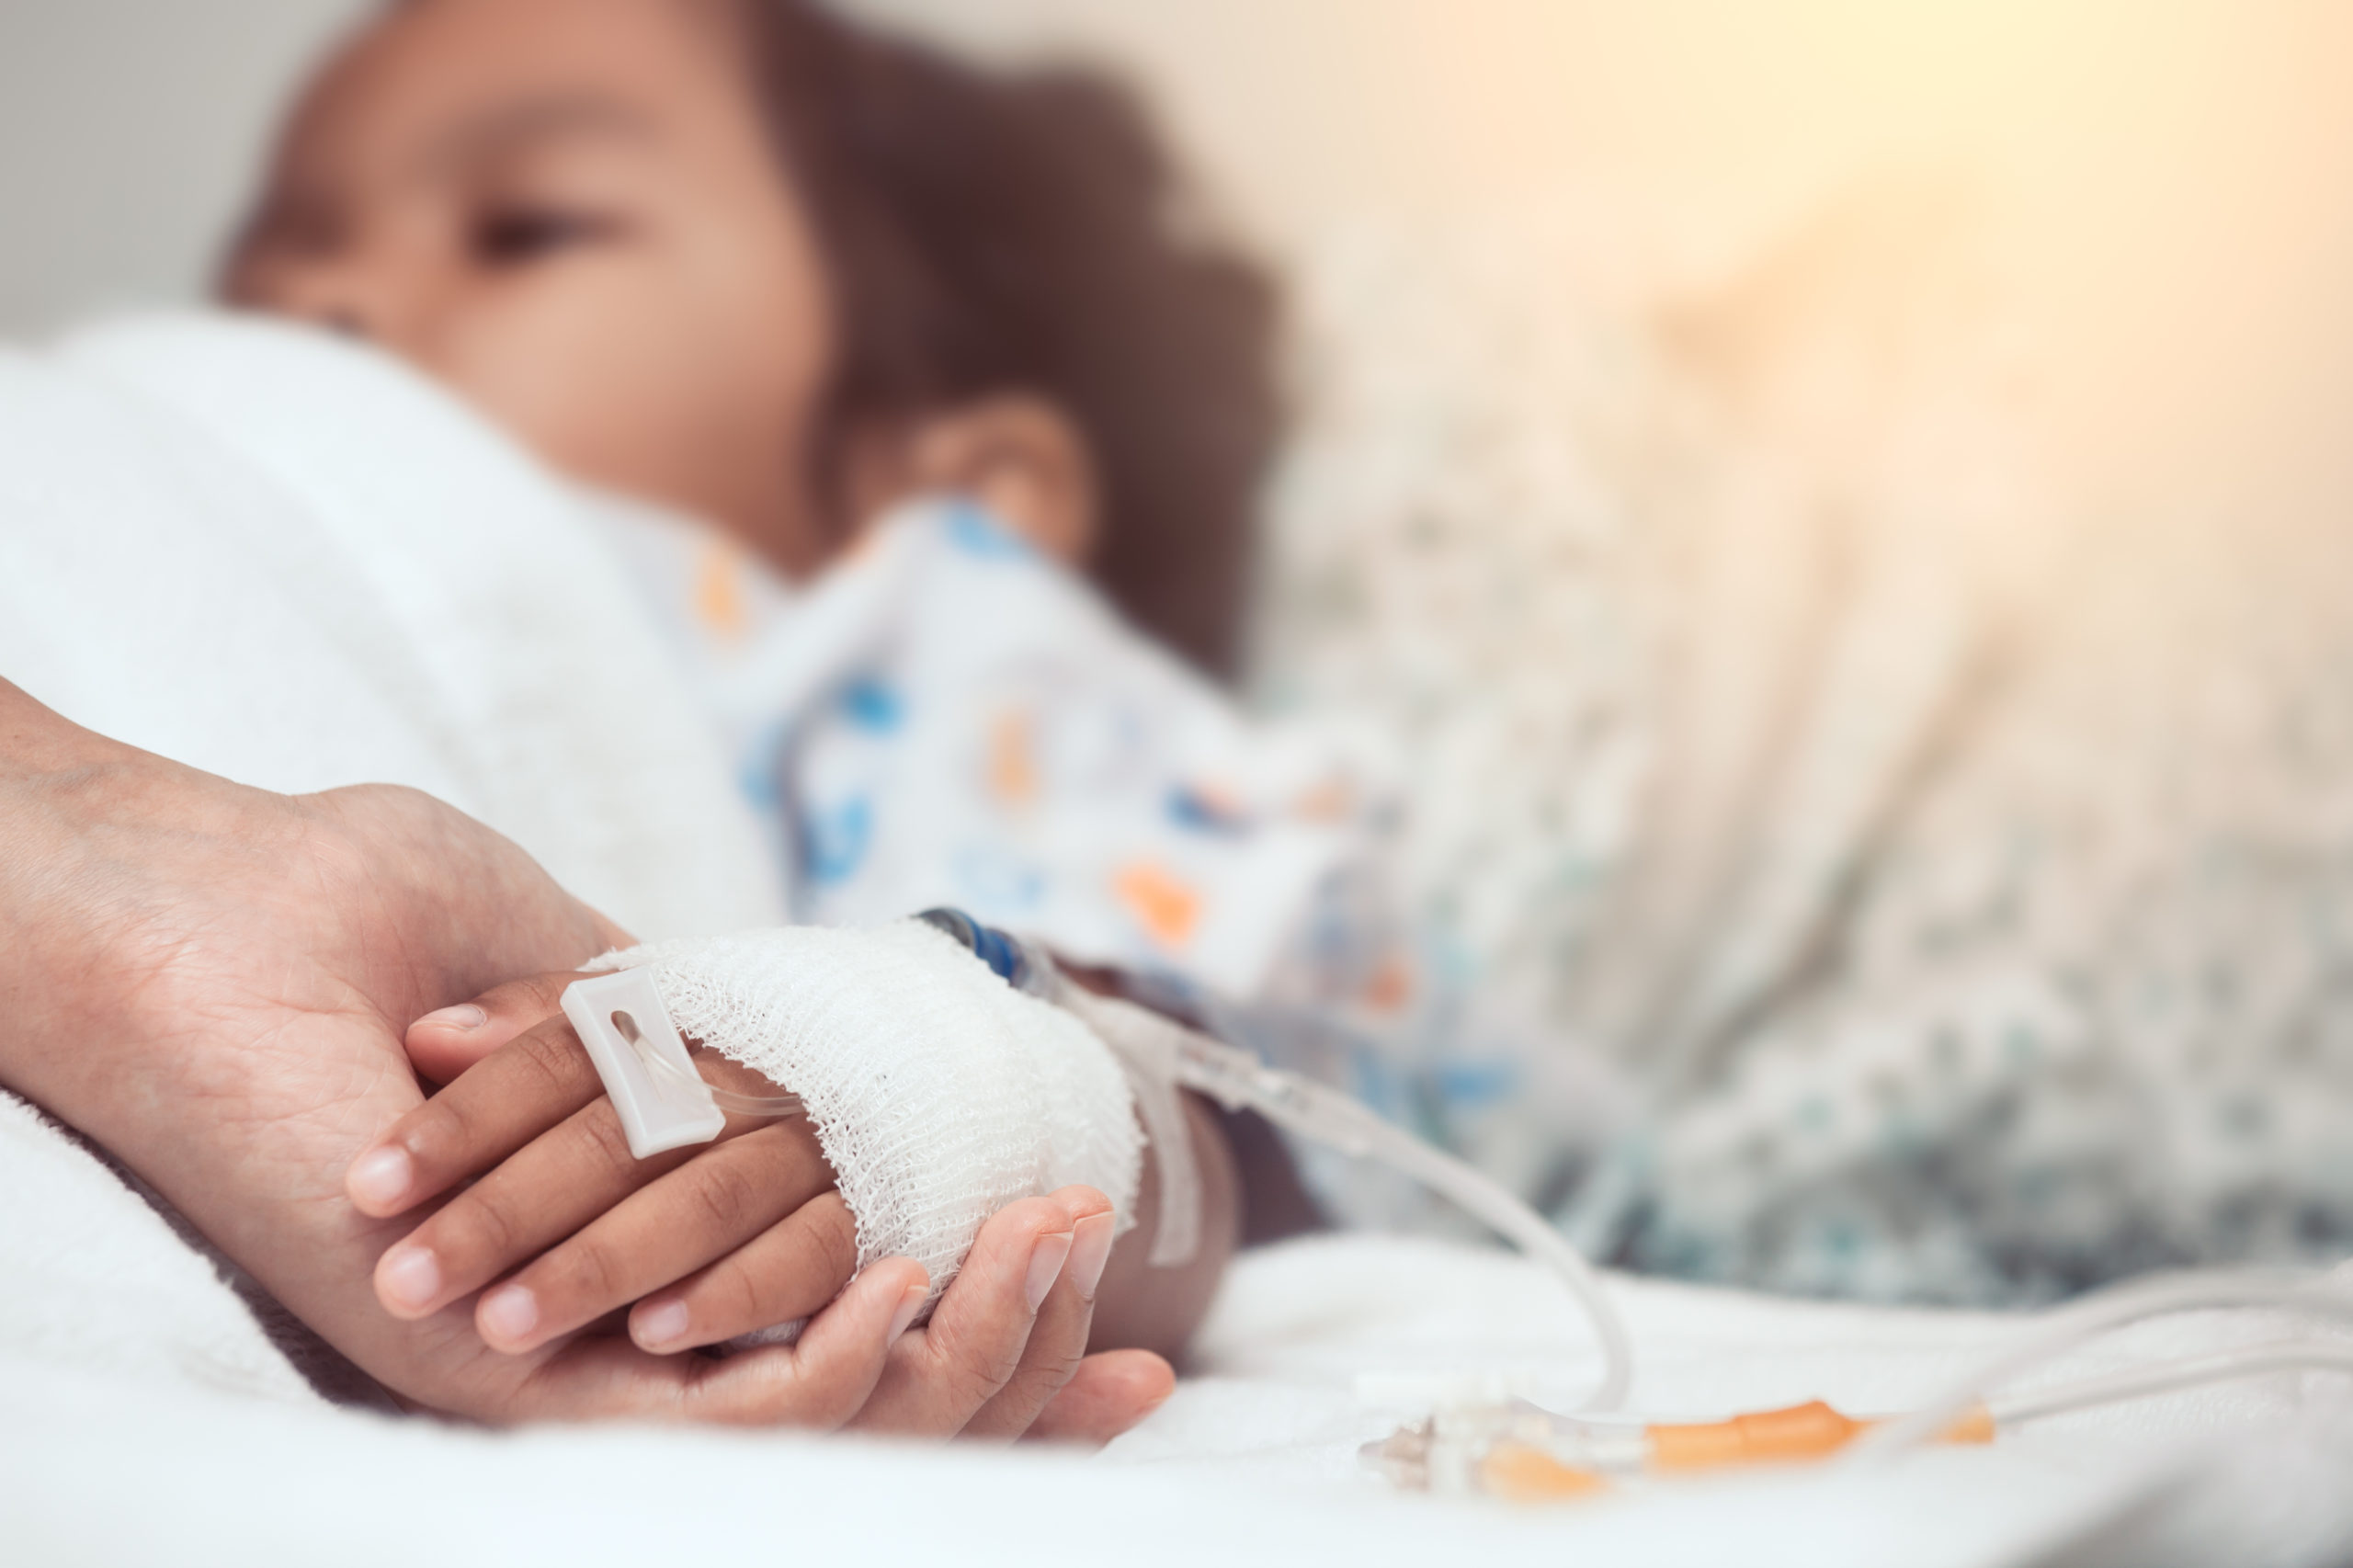 ما التهاب الأجهزة المتعددة MIS-C - متلازمة التهاب الأجهزة المتعددة عند الأطفال - حالة تسبب التهابات خطيرة في جسم الطفل فما أعراضها وأسبابها؟